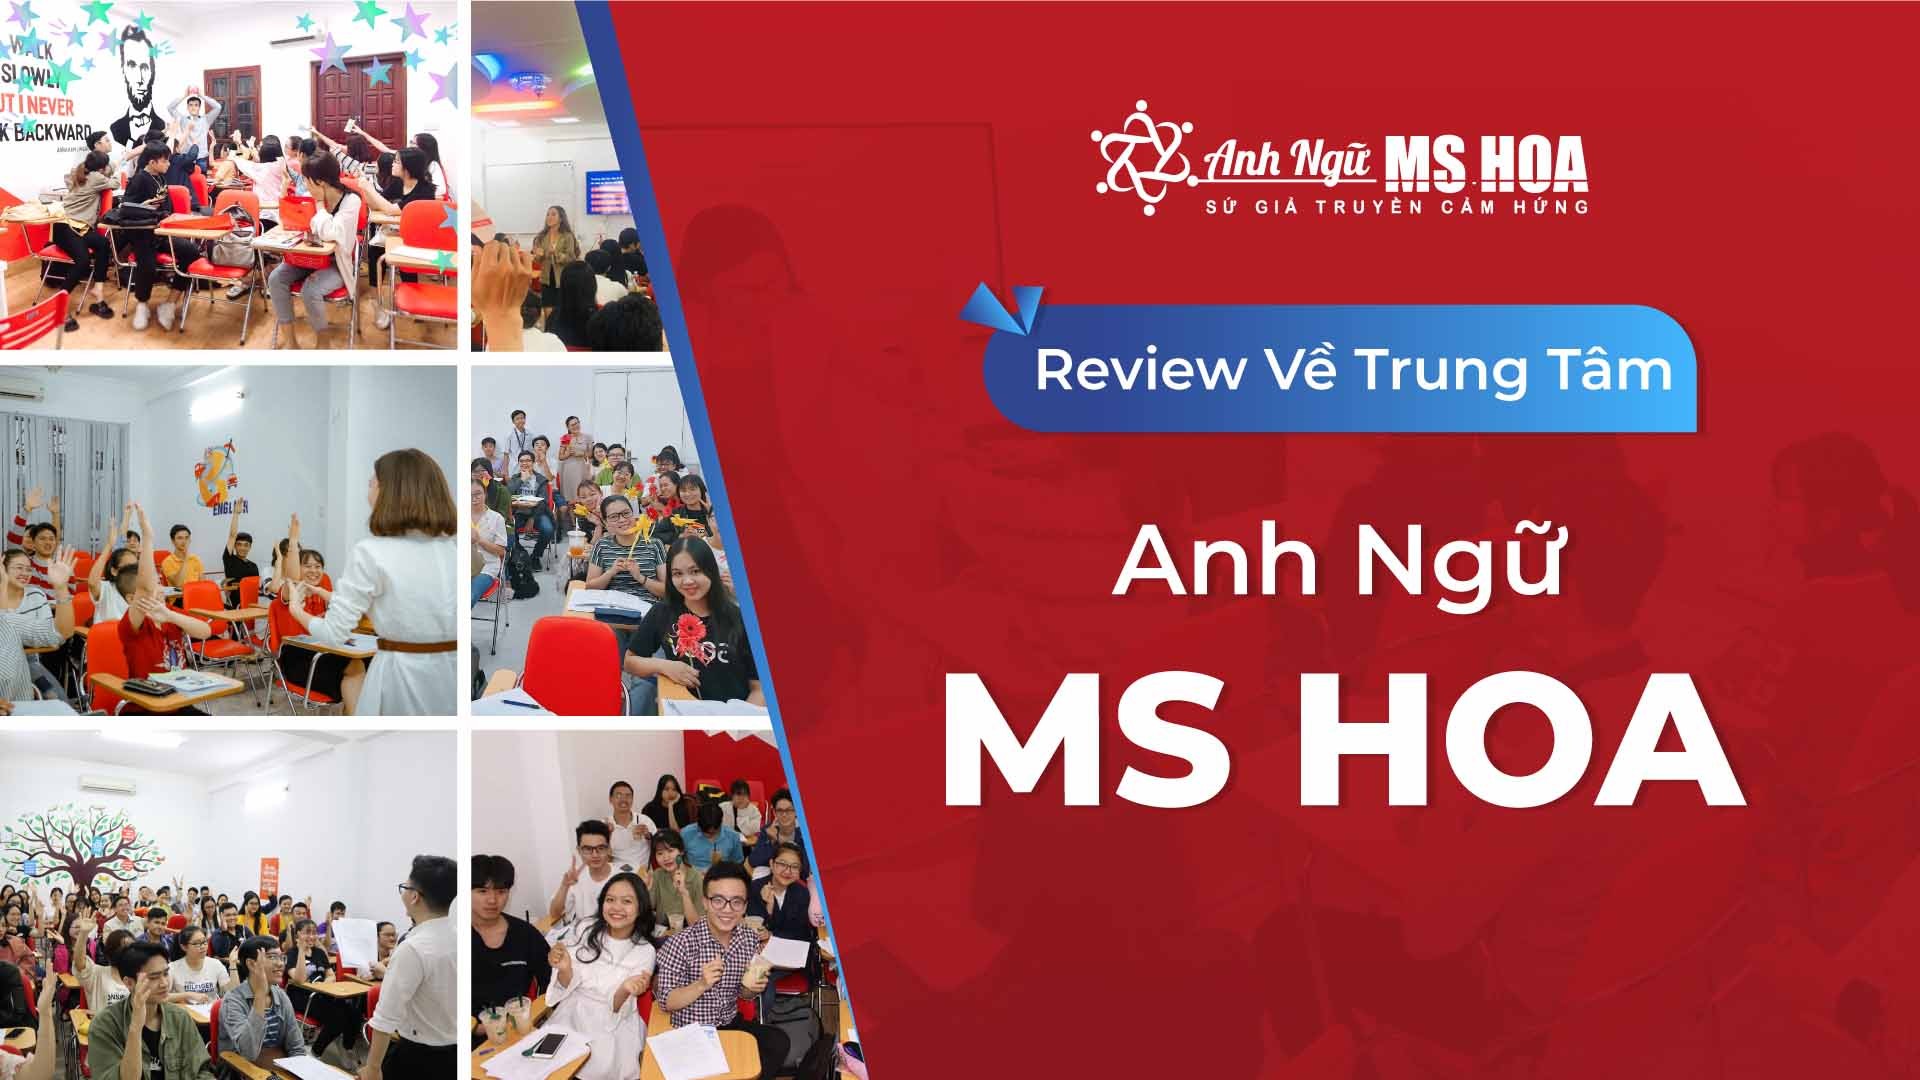 Review về Trung tâm Anh ngữ Ms Hoa